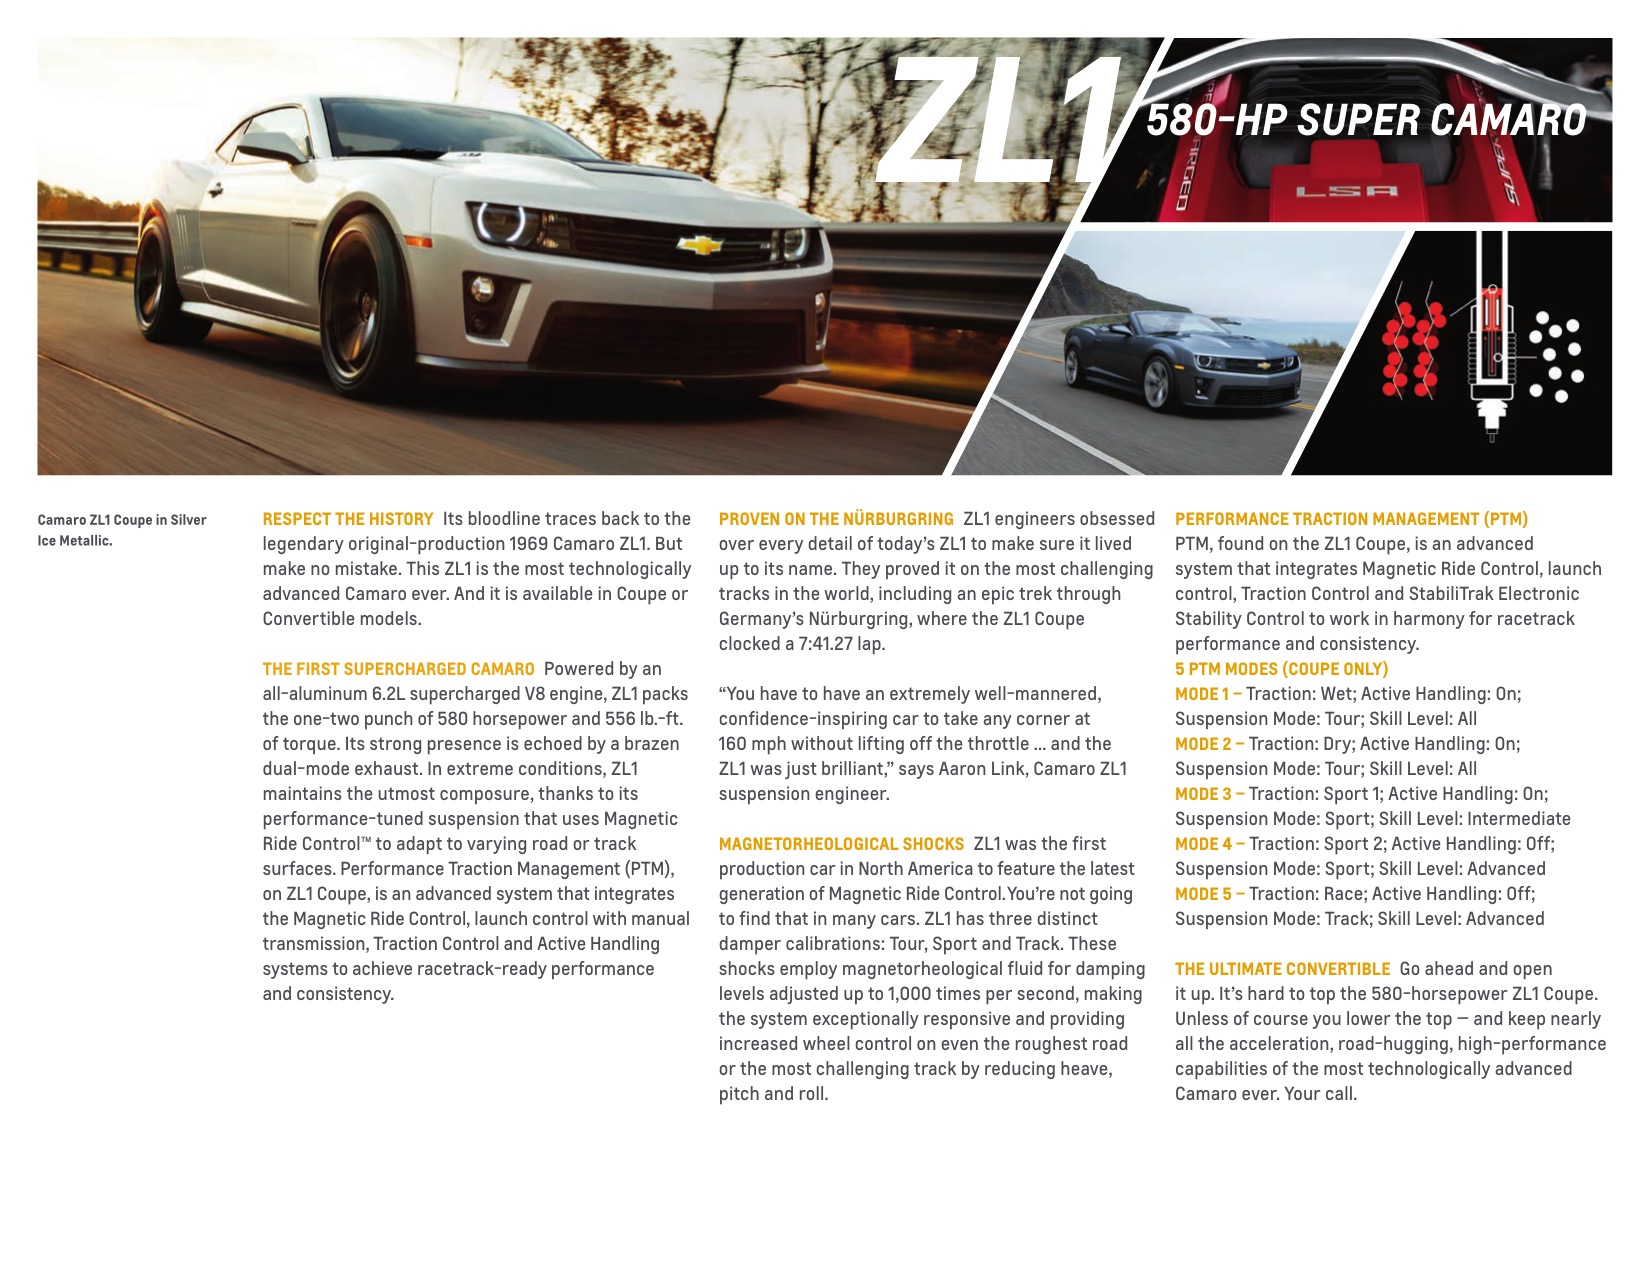 2014 Chev Camaro Brochure Page 7